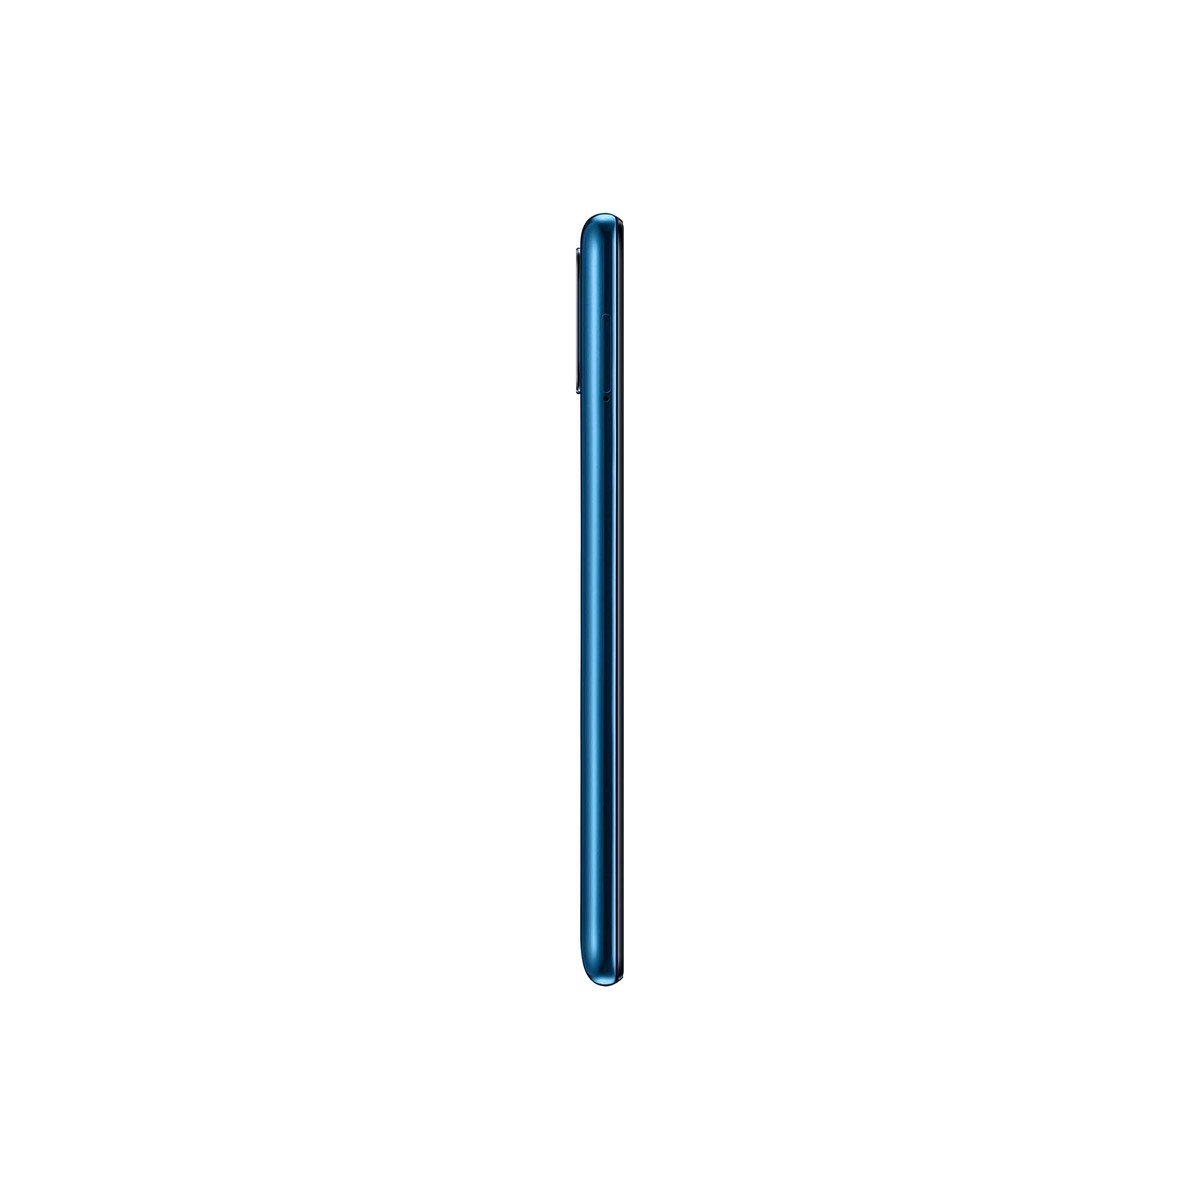 Samsung Galaxy M31 (SM-315F/DSN) 128GB Blue